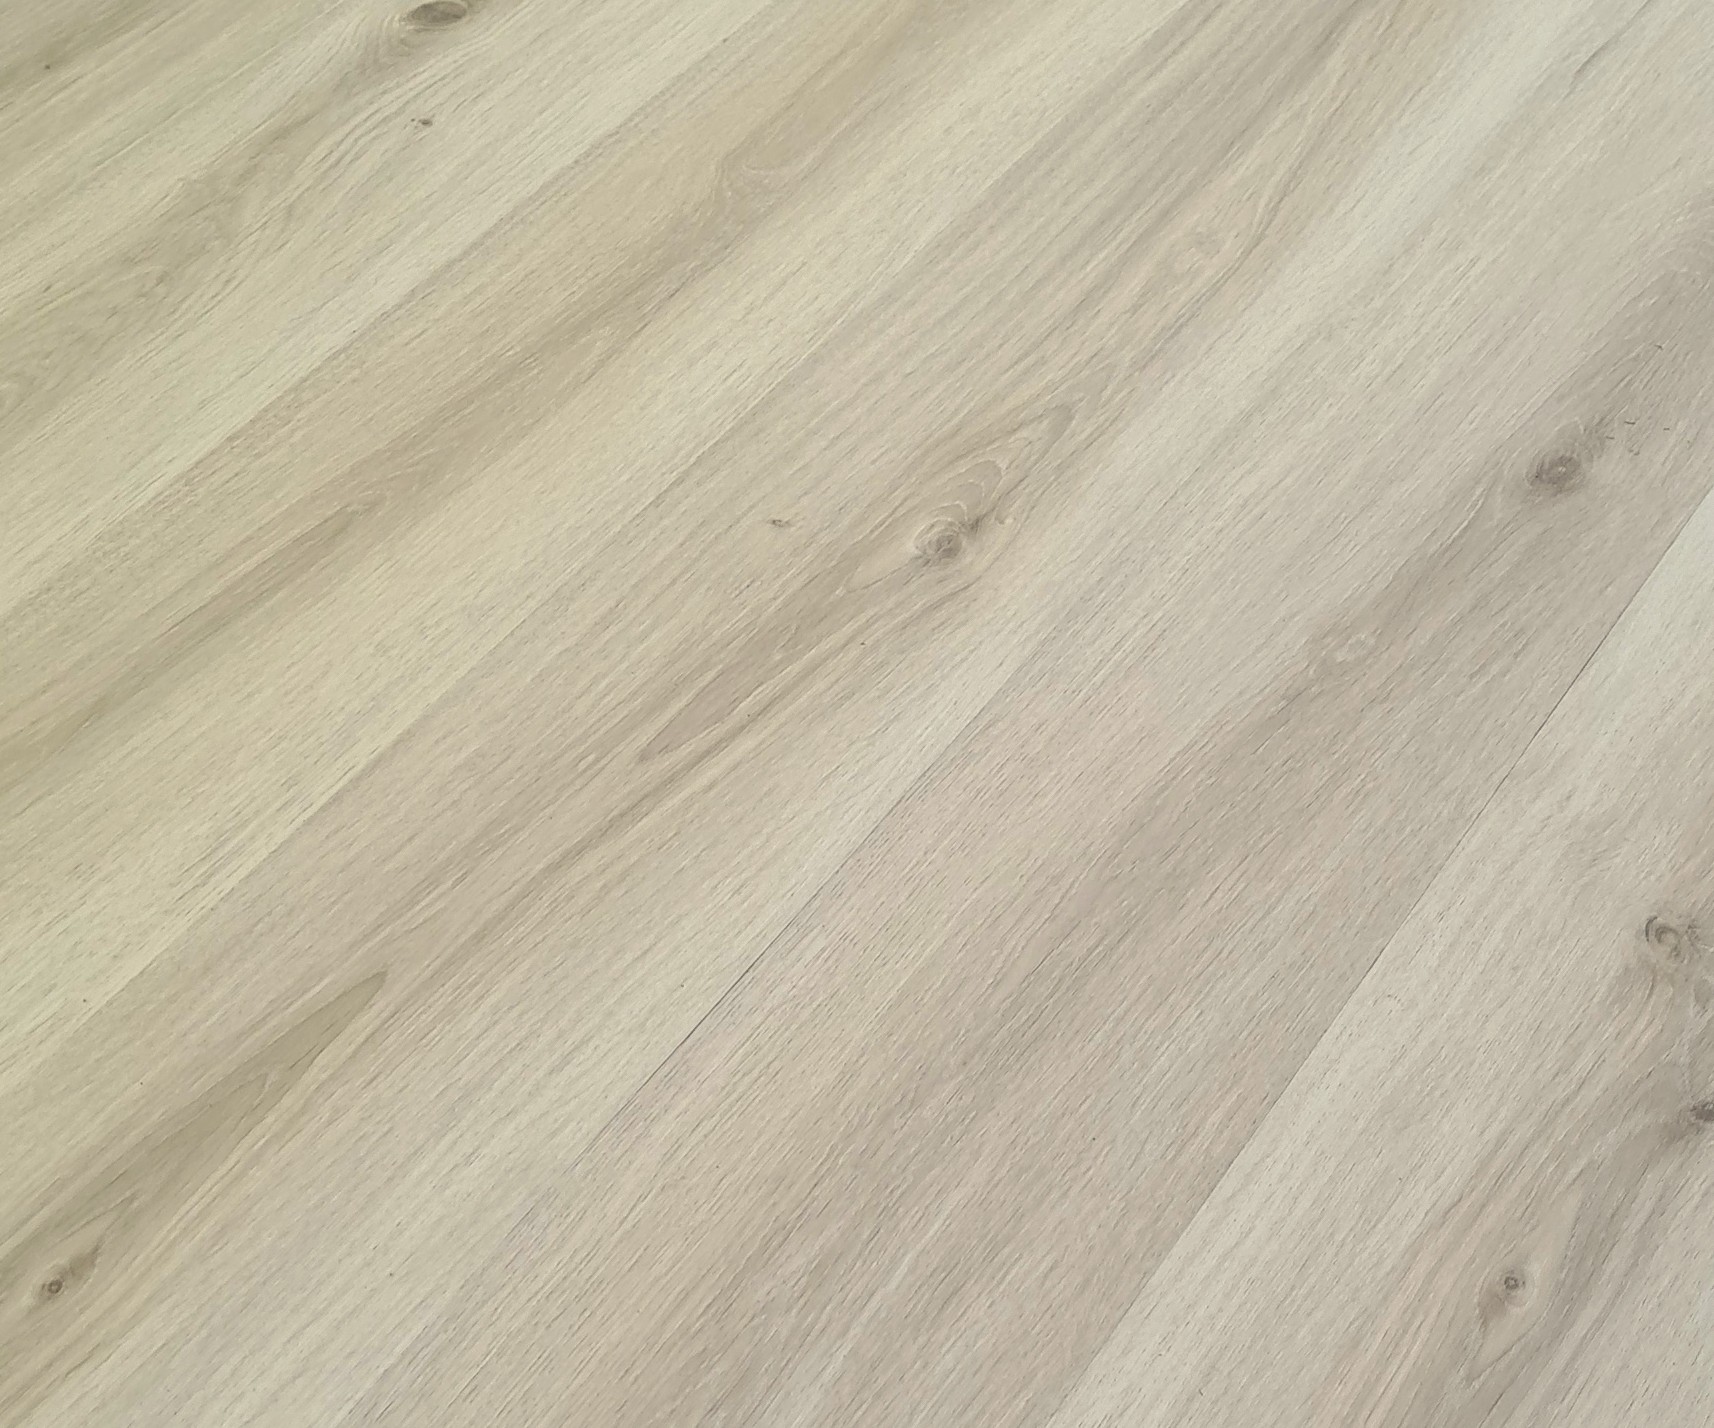 Podlaha vinylová zámková SPC Home kalahari oak beige